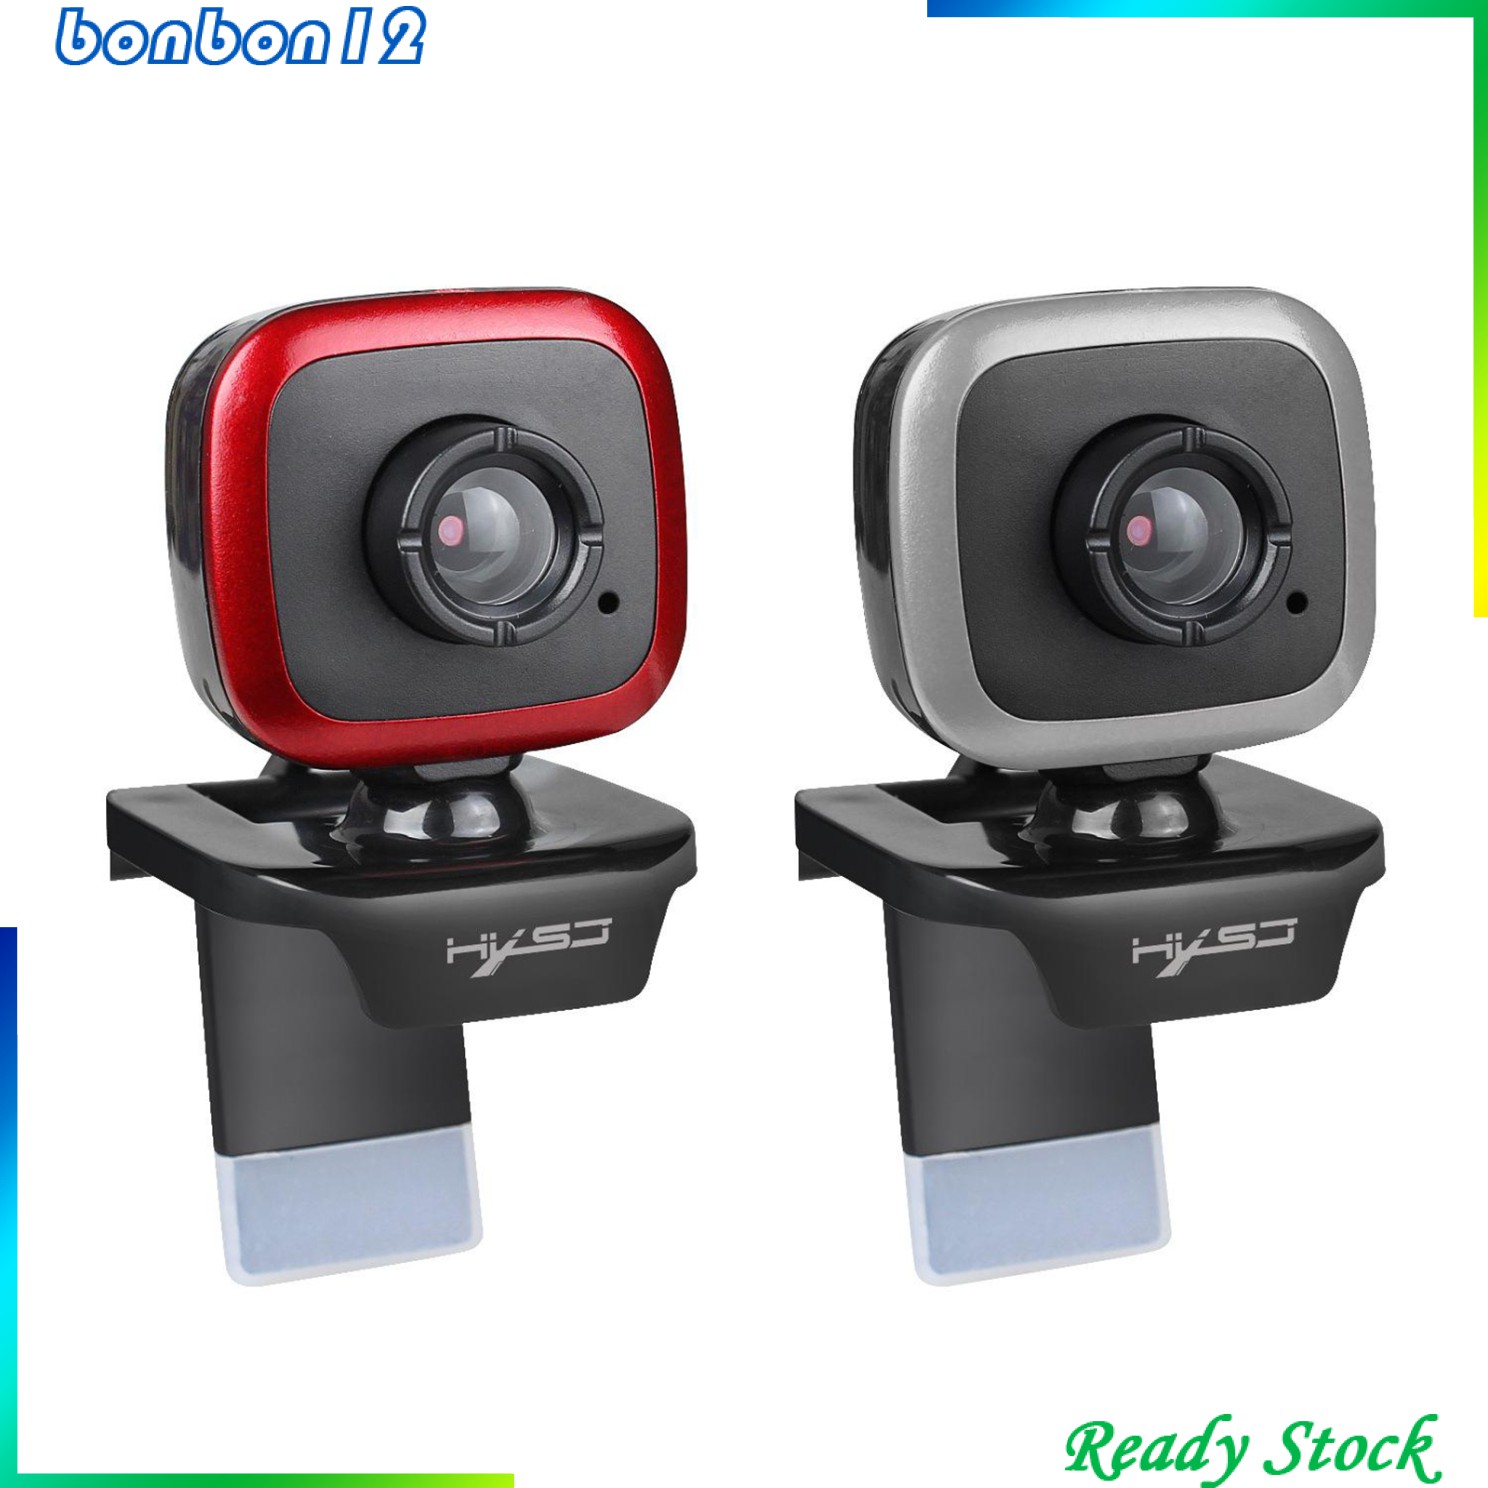 Webcam 480p Xoay 360 Độ Đa Năng Dành Cho Máy Tính